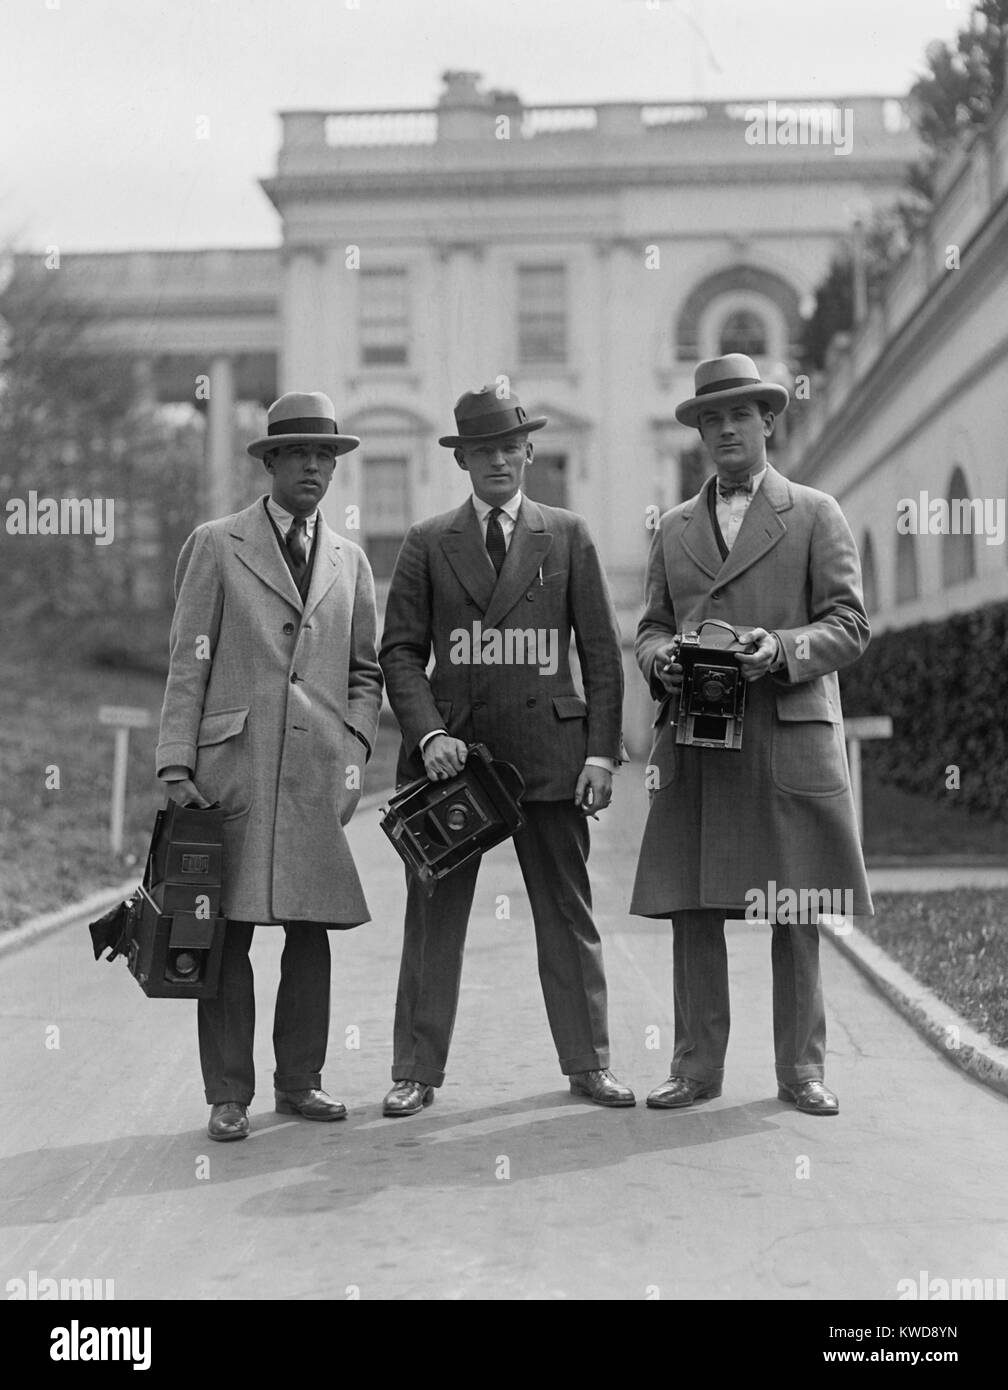 Trois photographes de presse à l'extérieur de Maison Blanche, ch. Années 1920. Le photojournaliste de gauche dispose d'une grande caméra alors que ses collègues sont plus légers, plus petits, à l'aide de caméras de l'graphflex (BSLOC 2016 type 8  157) Banque D'Images